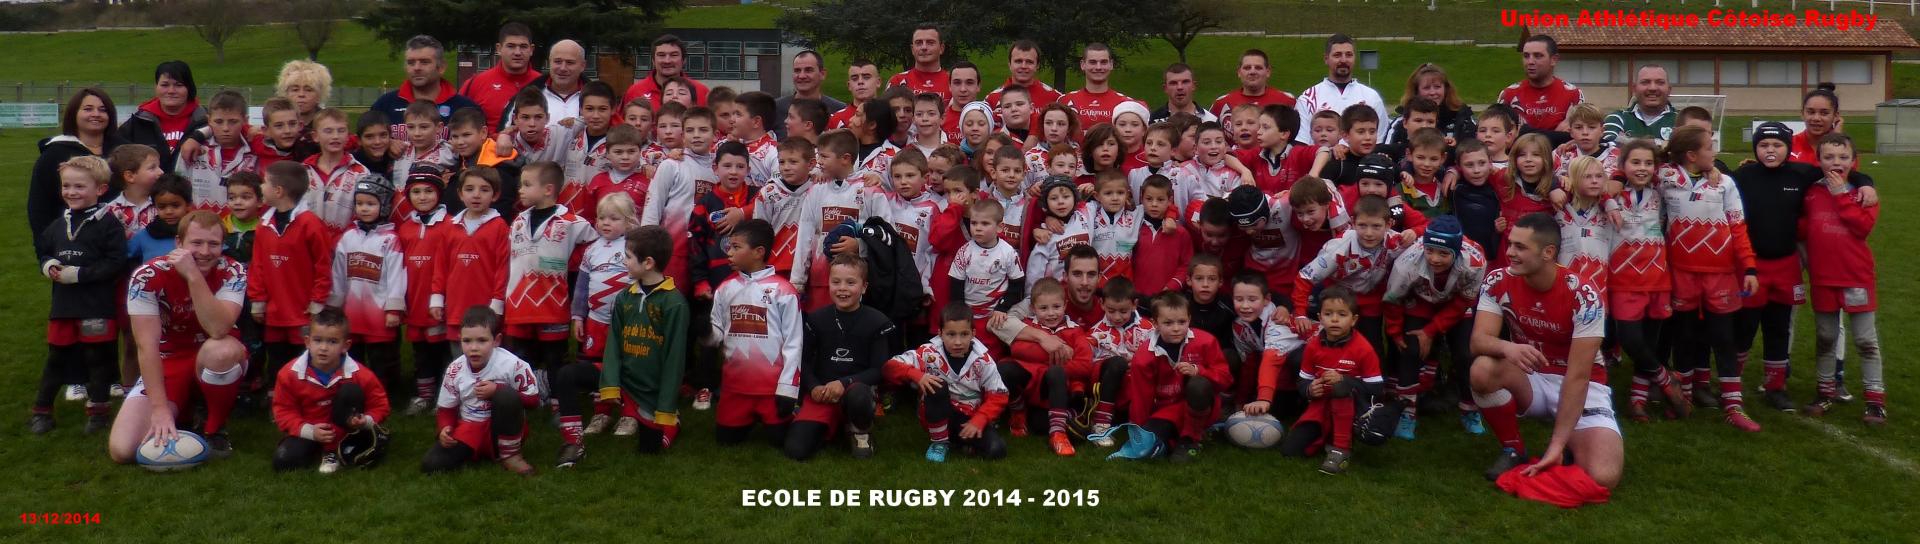 Ecole de rugby 14 12 2014 p1030220